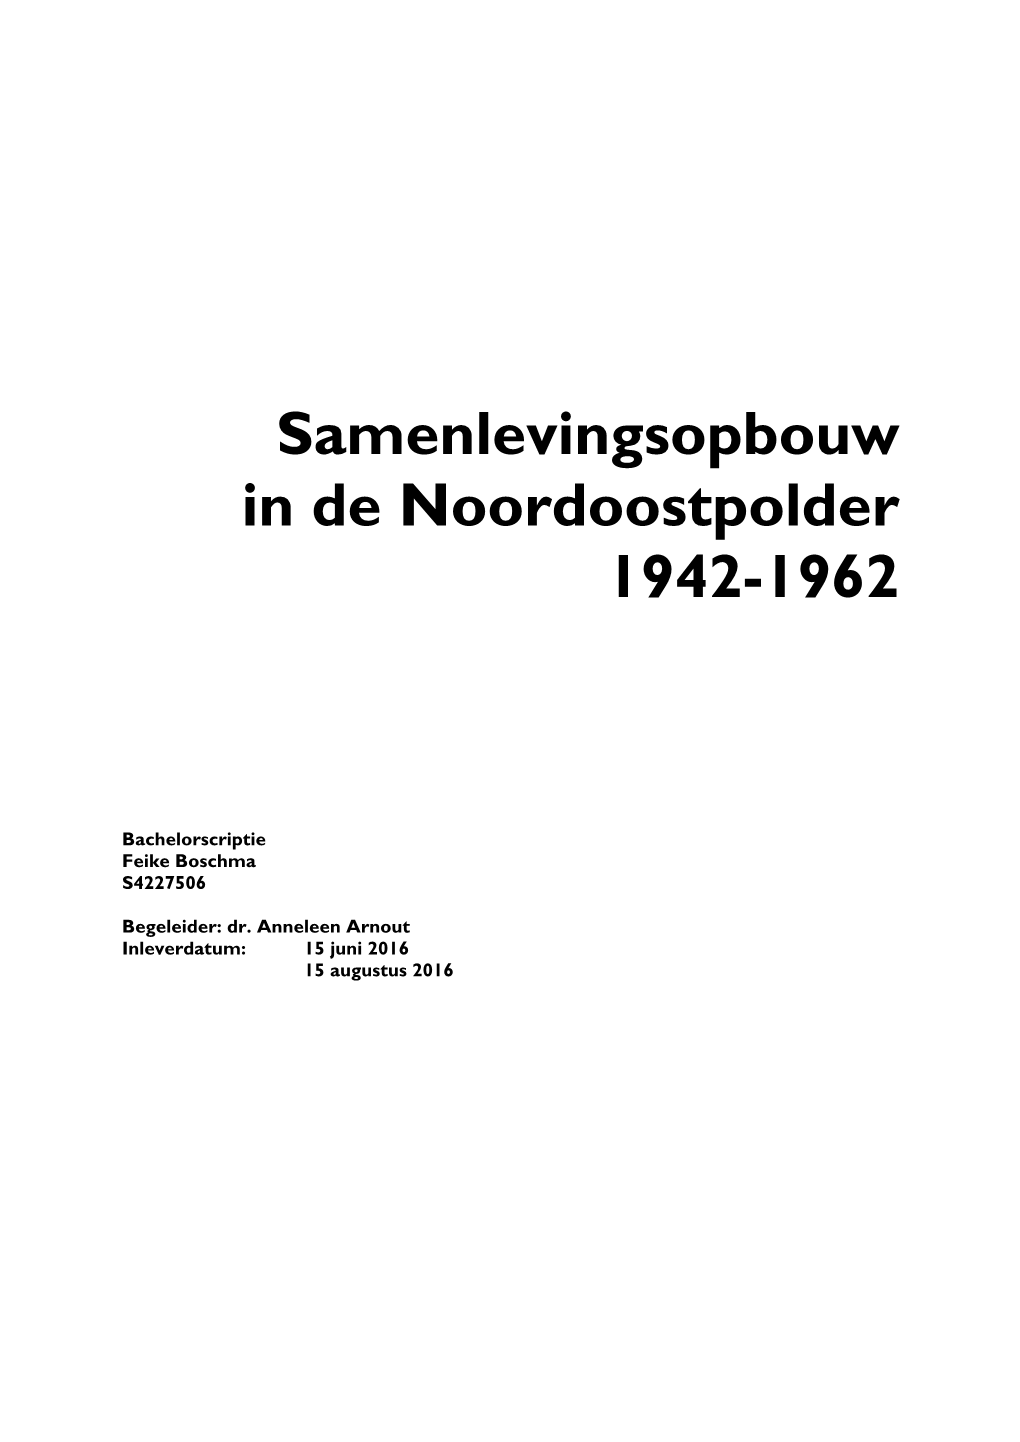 Samenlevingsopbouw in De Noordoostpolder 1942-1962